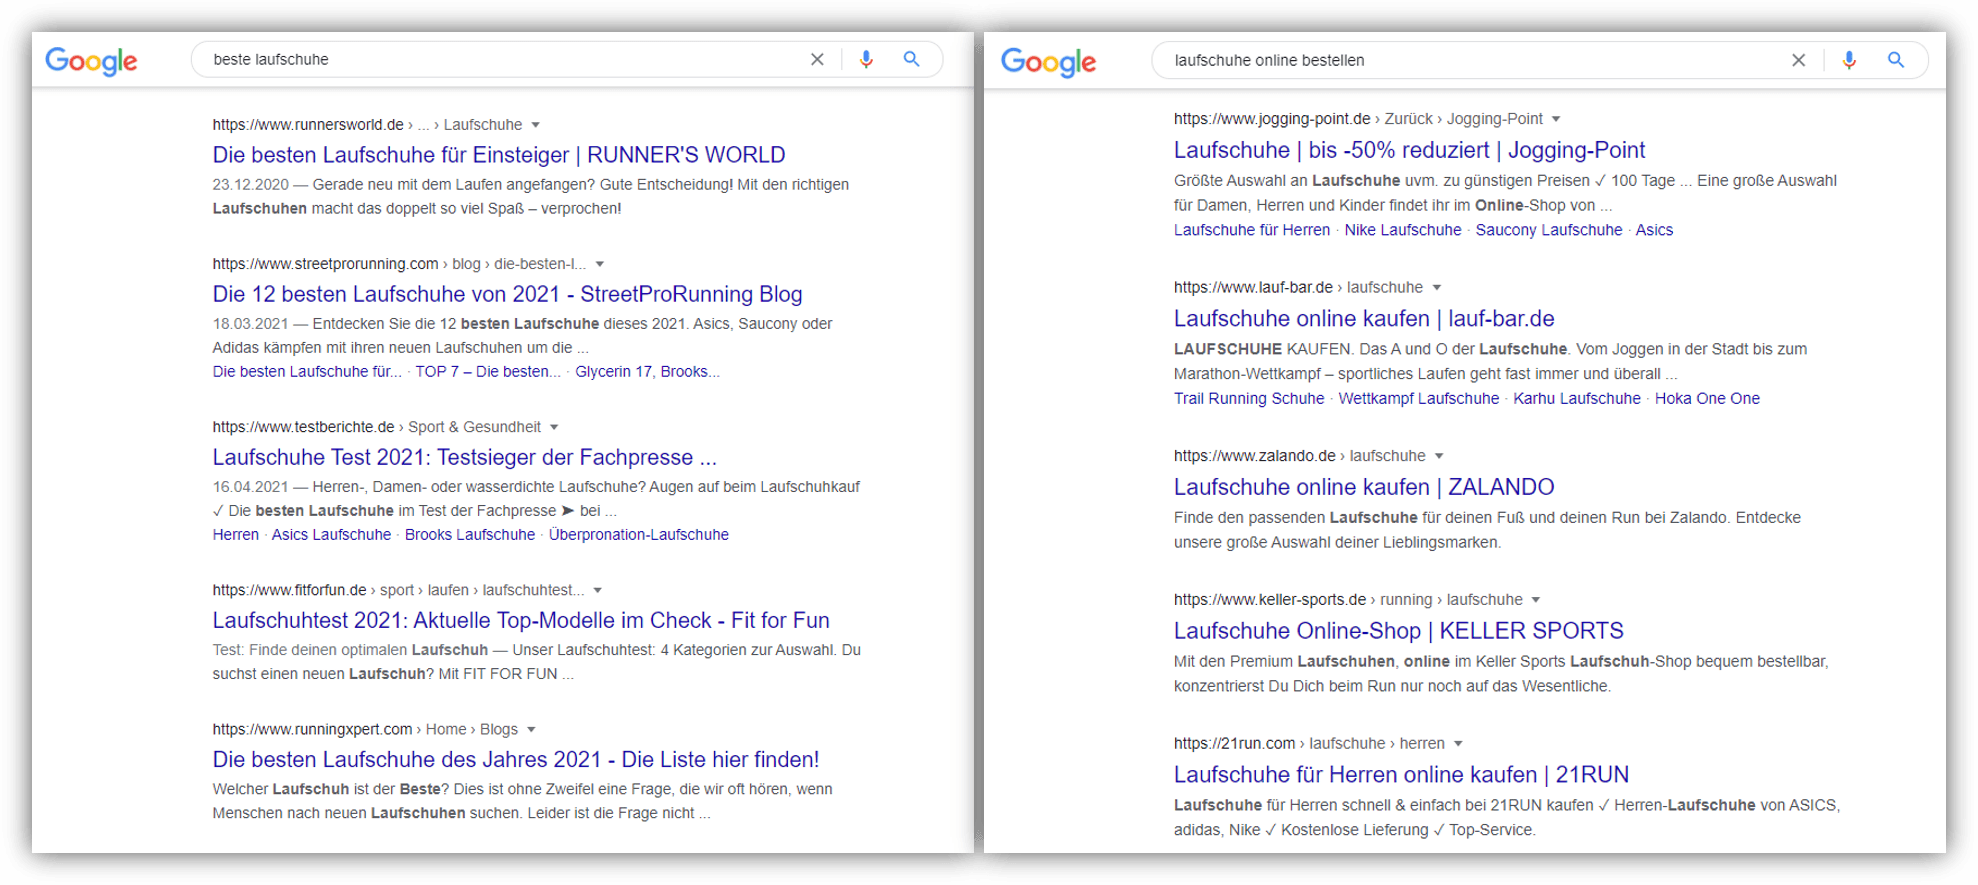 Google-Suchergebnisse im Vergleich